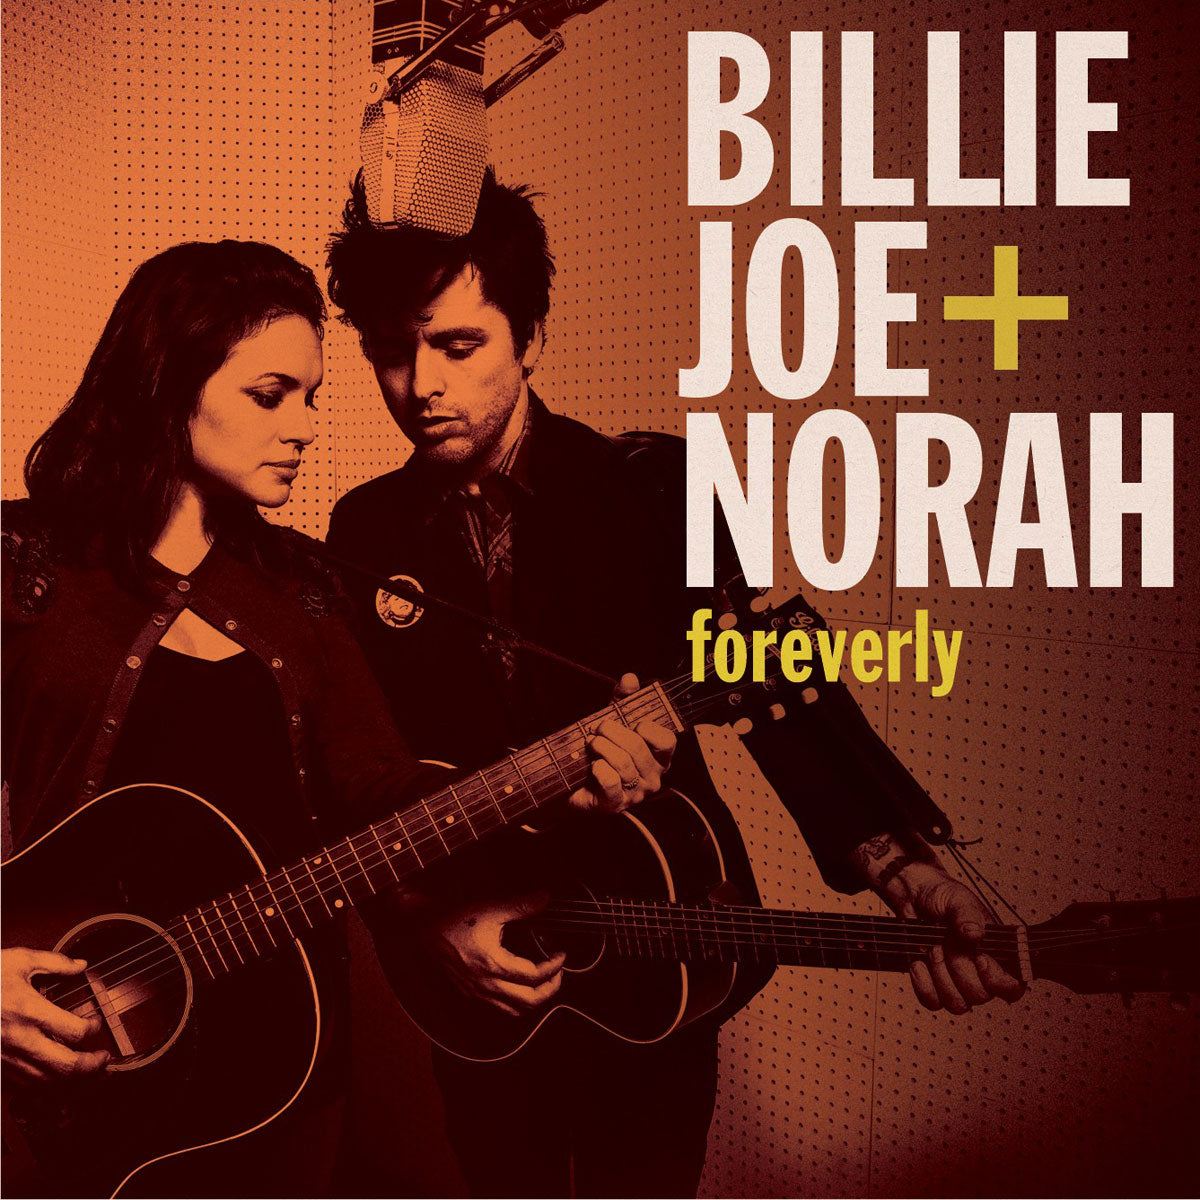 Billie Joe & Norah - Foreverly (Vinyl LP)